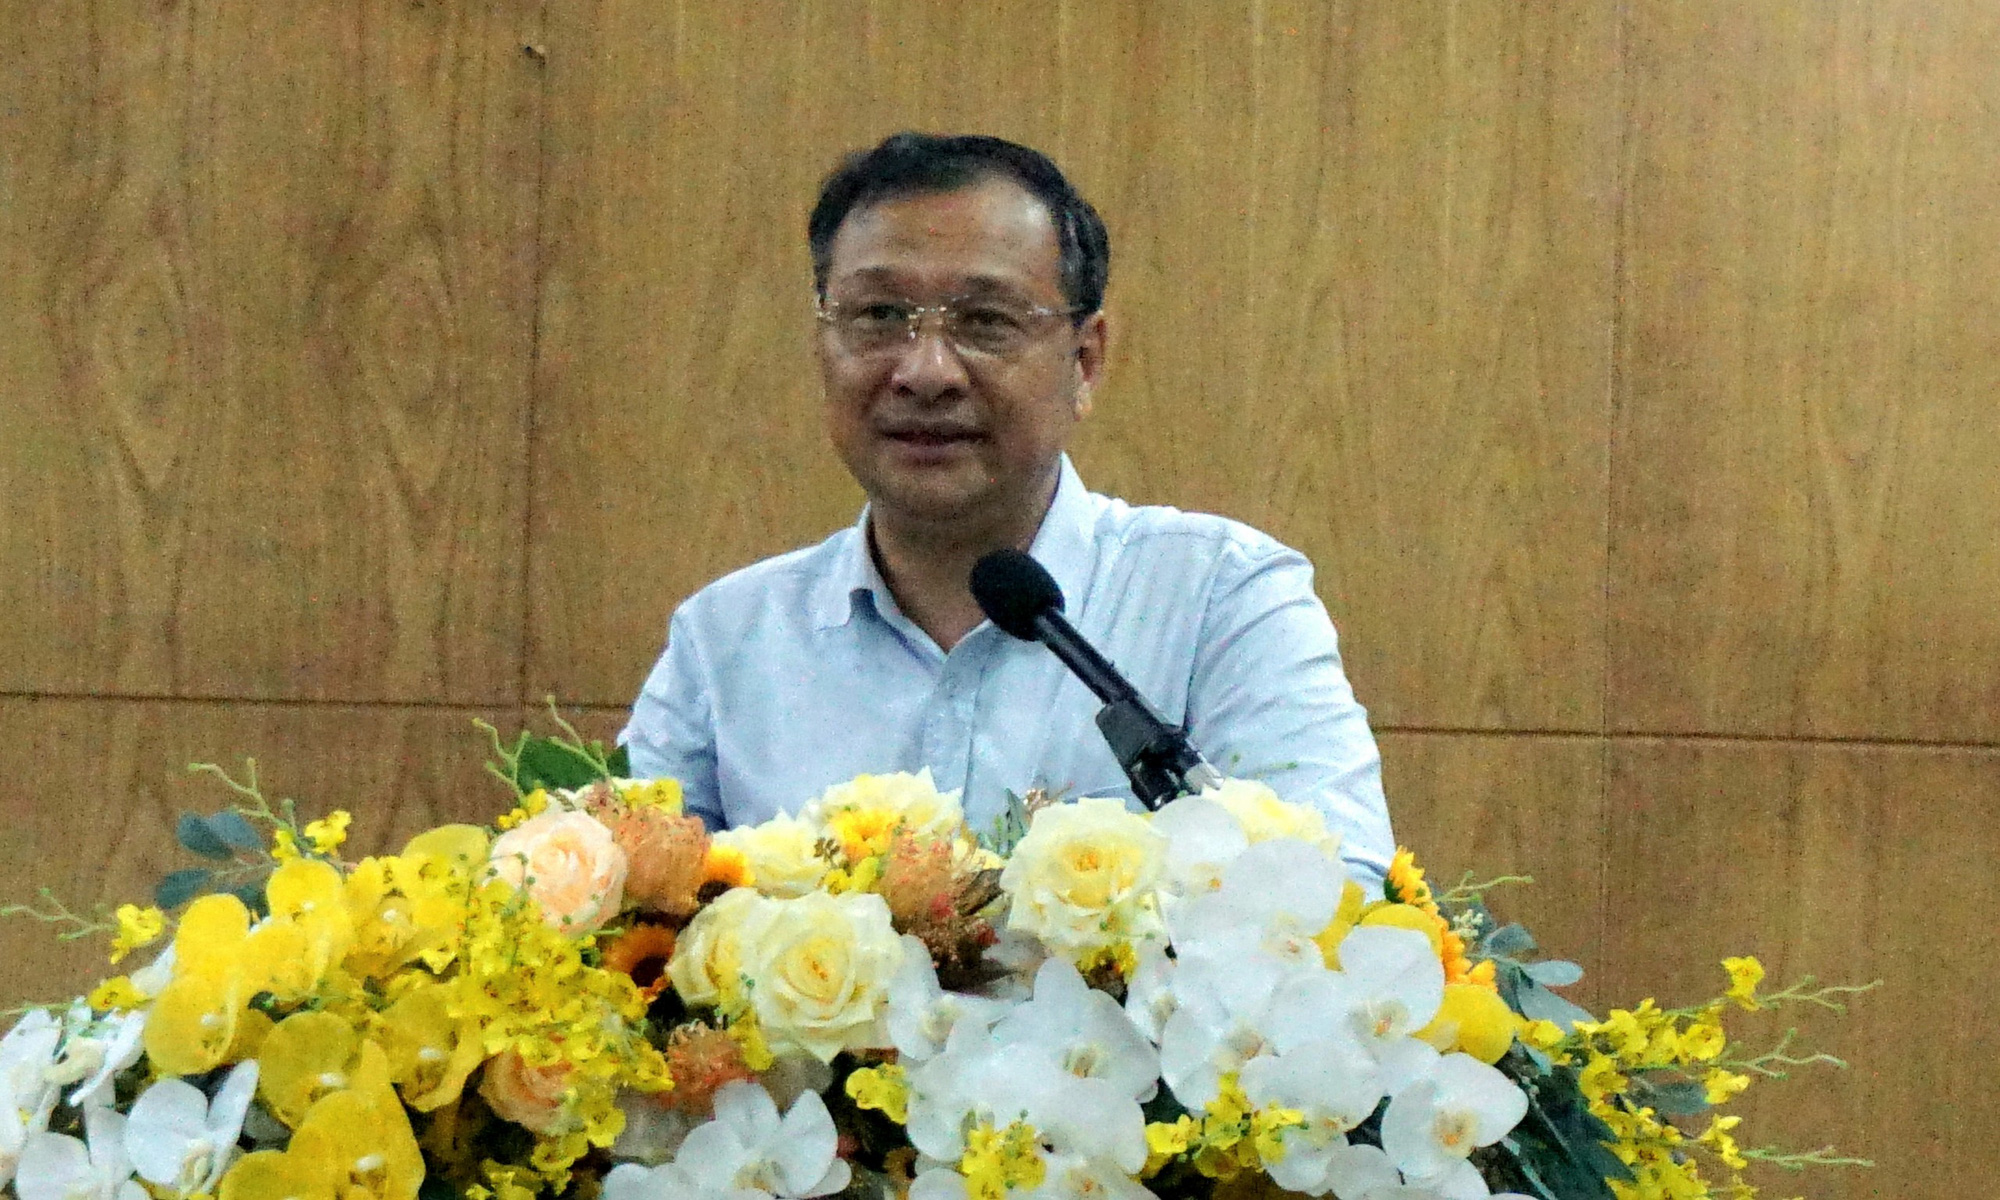 Ông Lê Hoài Nam, phó giám đốc Sở Giáo dục và Đào tạo TP.HCM, phát biểu tại cuộc họp về tuyển sinh vào lớp 10 chiều 3-7 - Ảnh: Q.N.